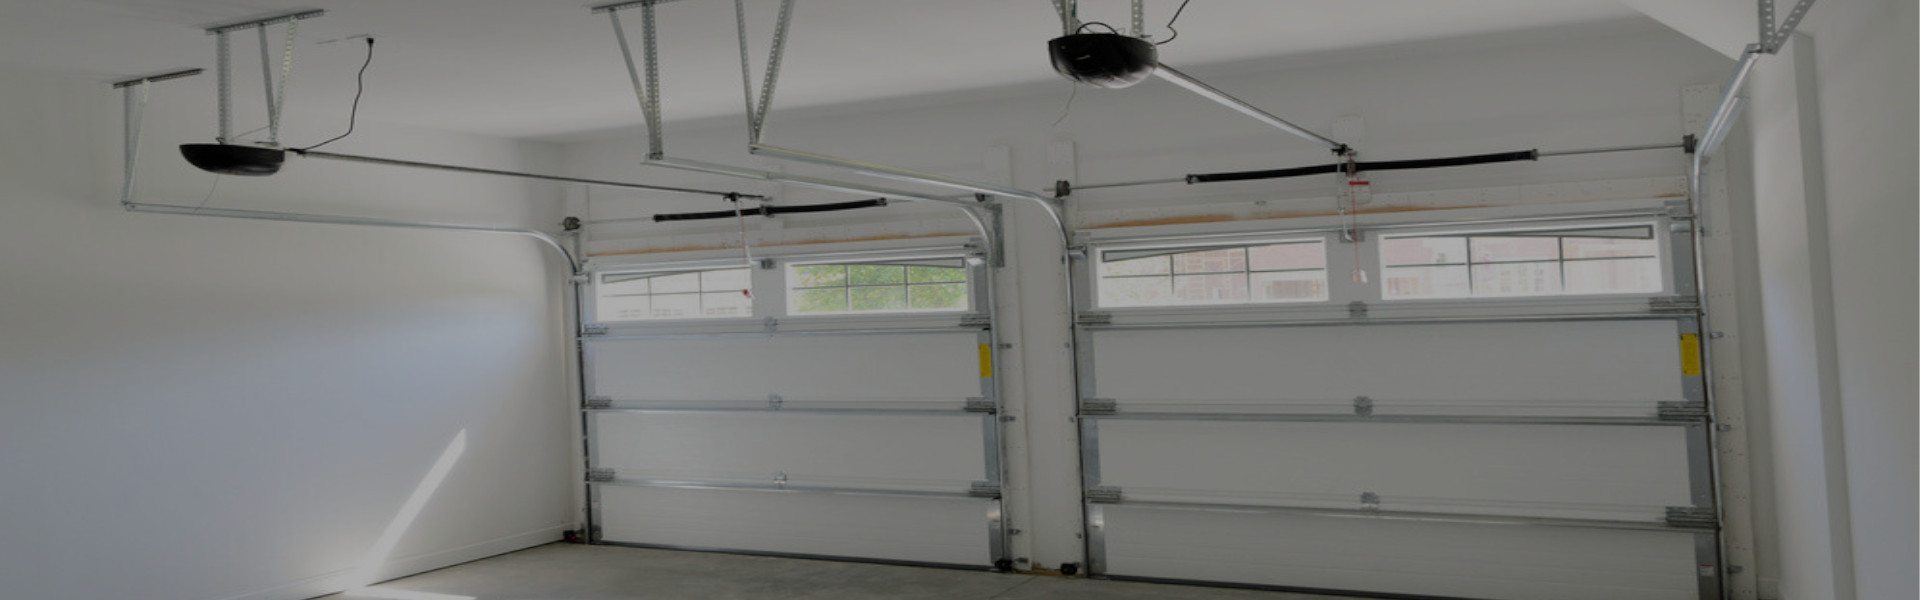 Slider Garage Door Repair, Glaziers in Isleworth, TW7